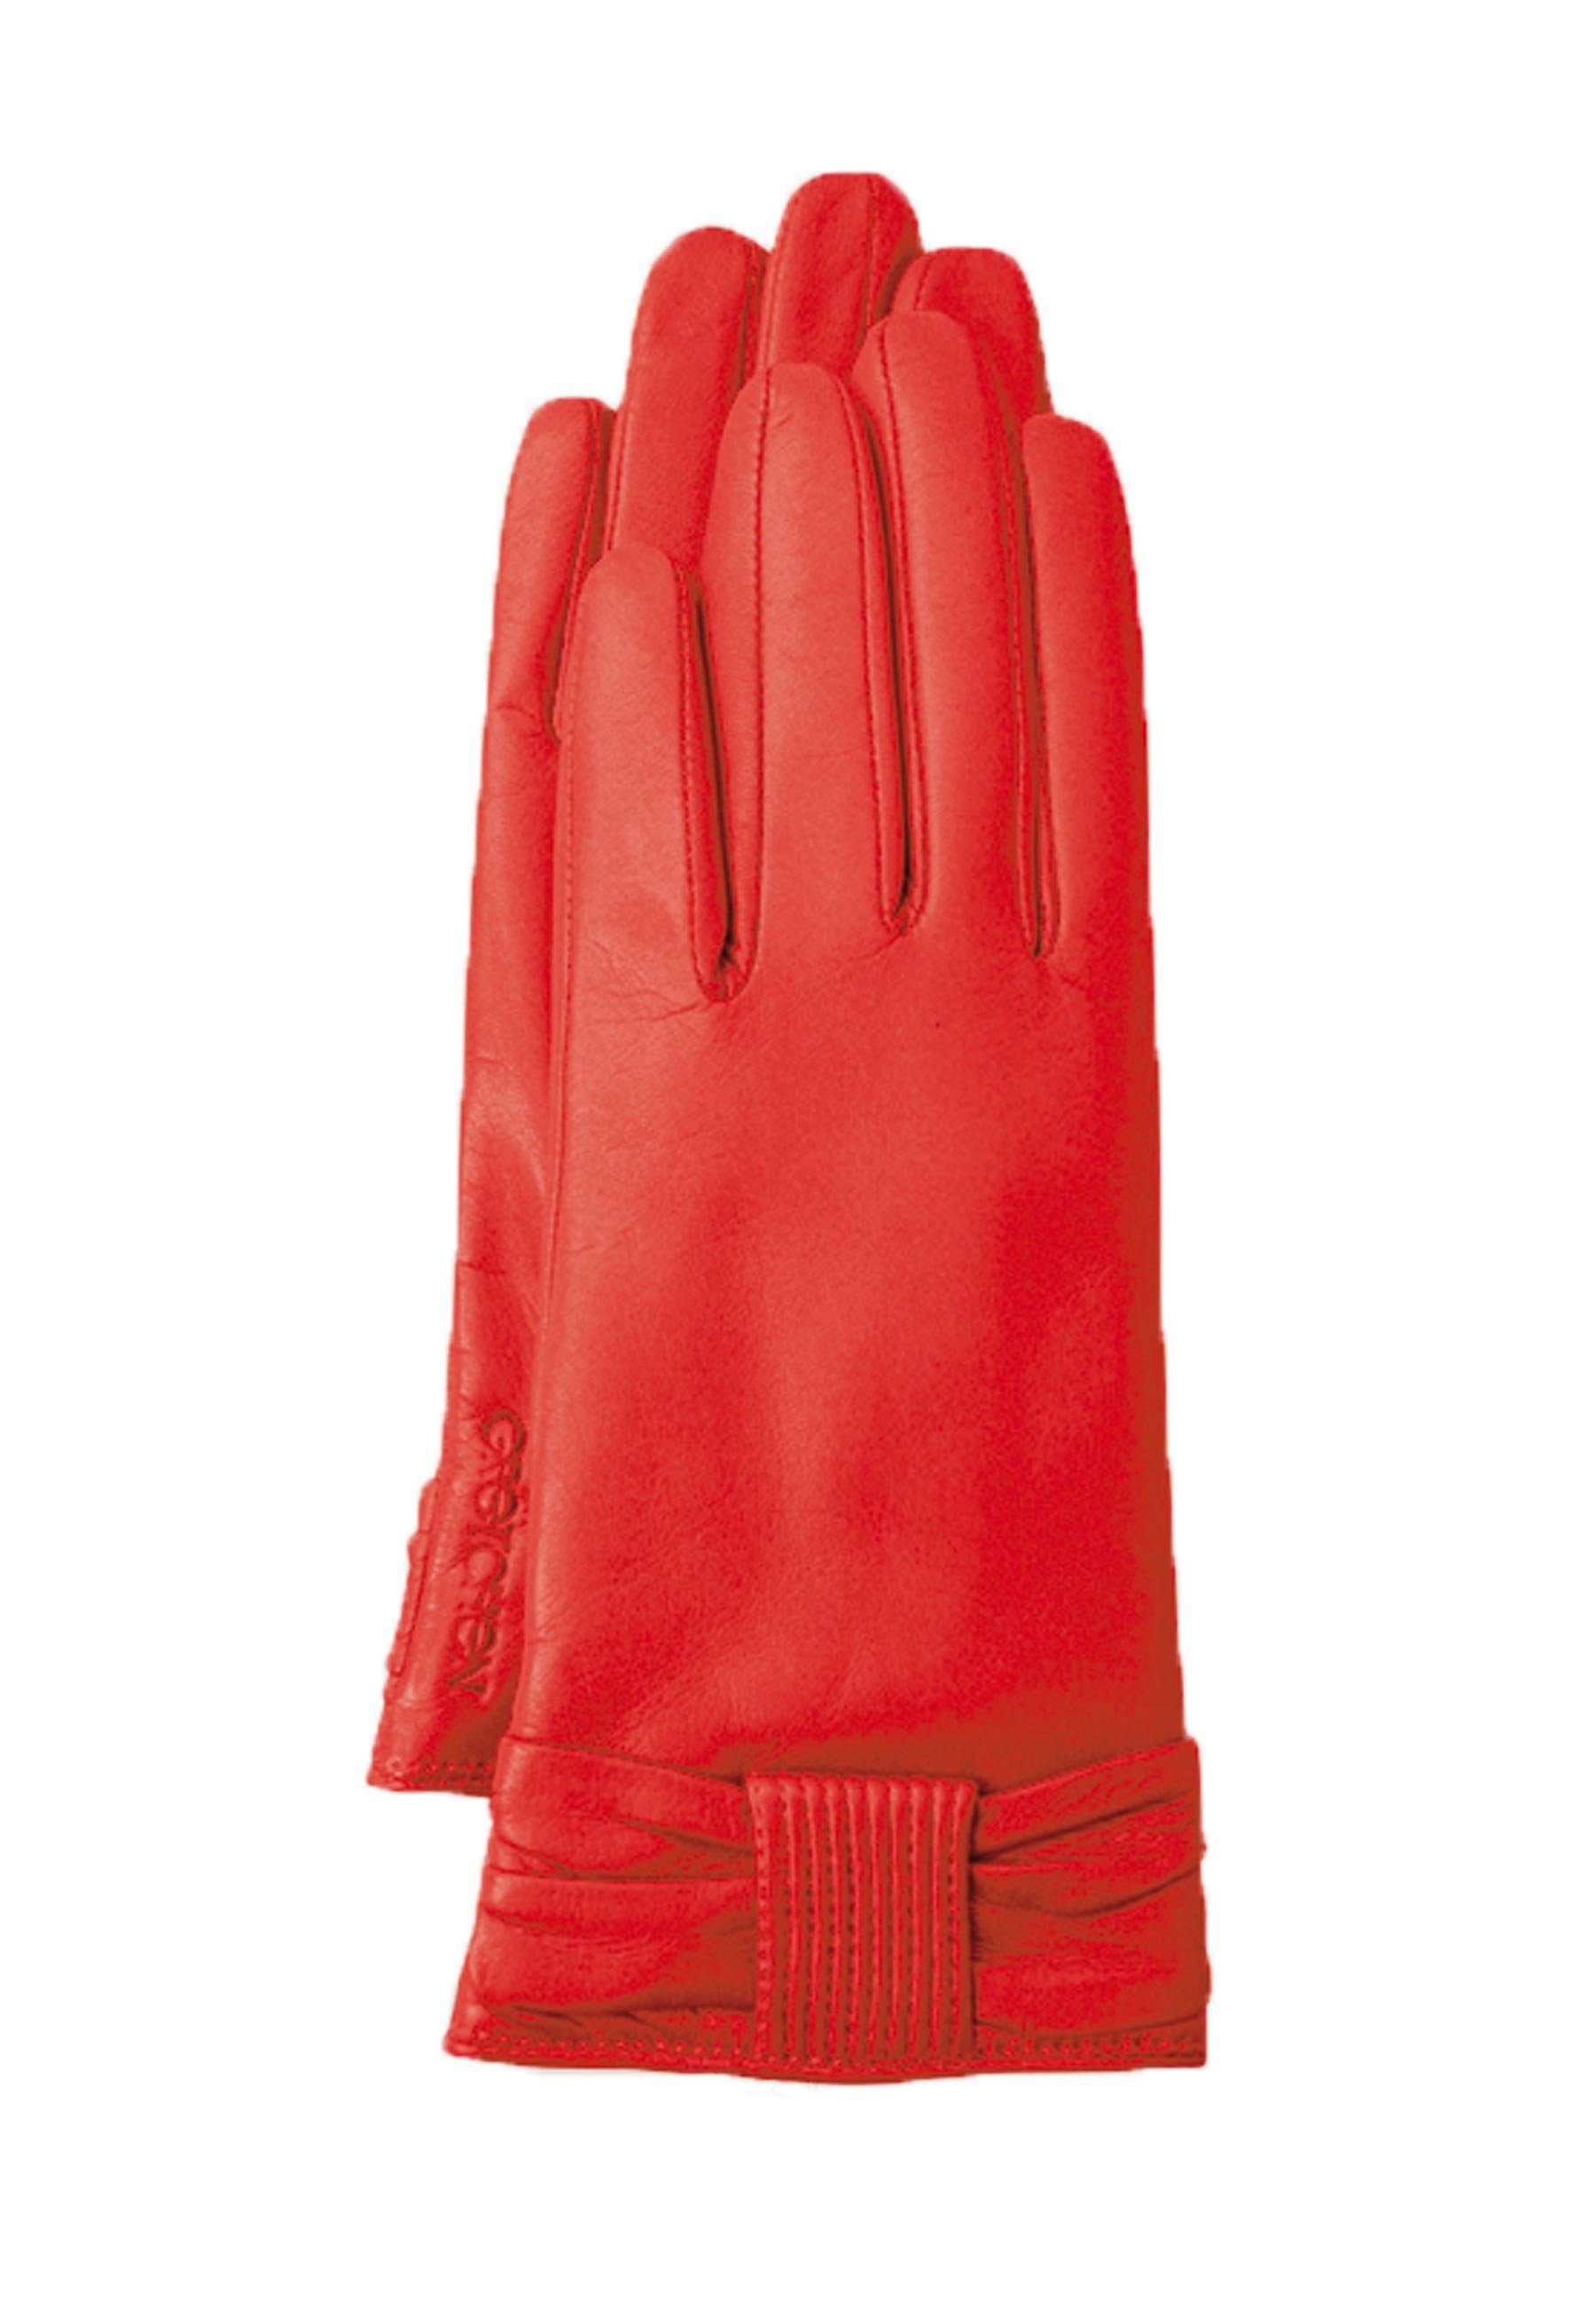 GRETCHEN Lederhandschuhe Bow Gloves mit kuscheligem Kaschmir-Futter rot-rot | Handschuhe